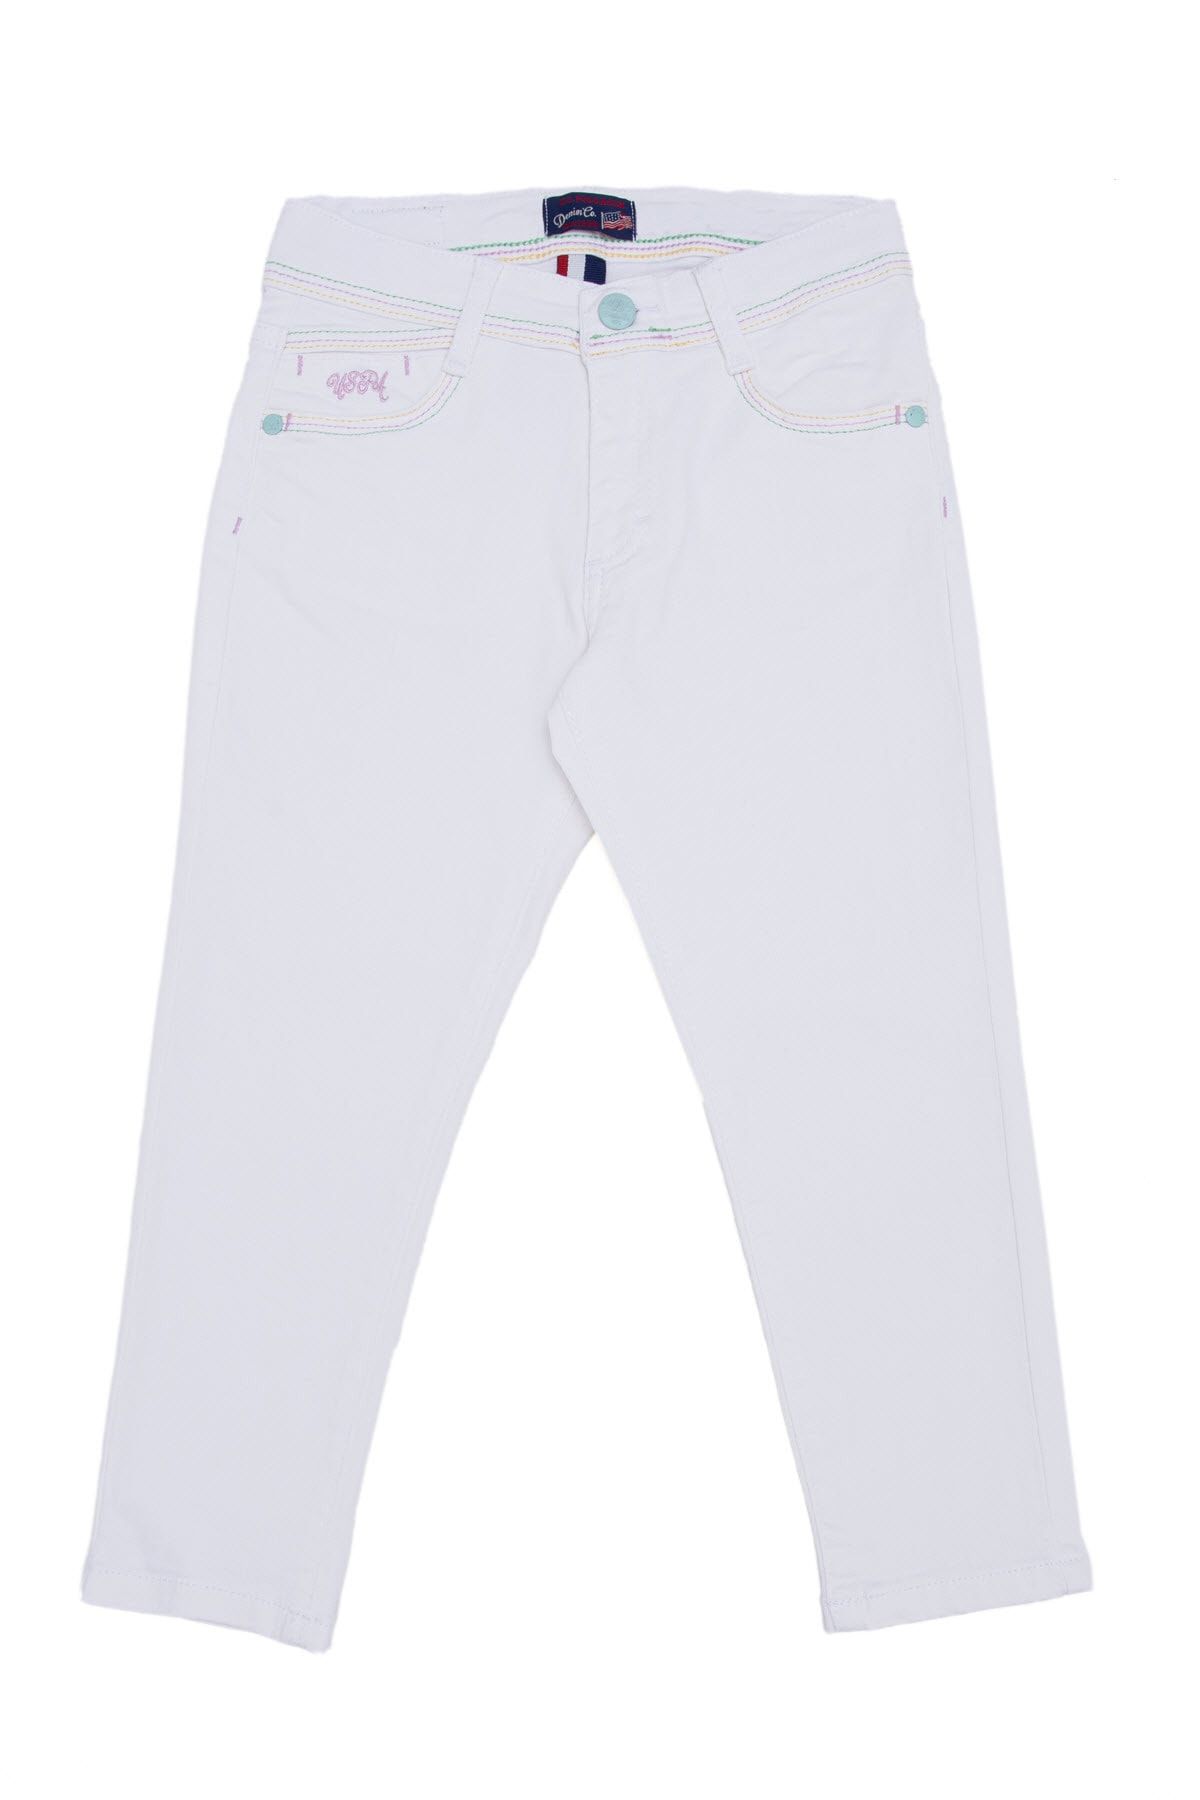 U.S. Polo Assn. Beyaz Kız Çocuk Jeans